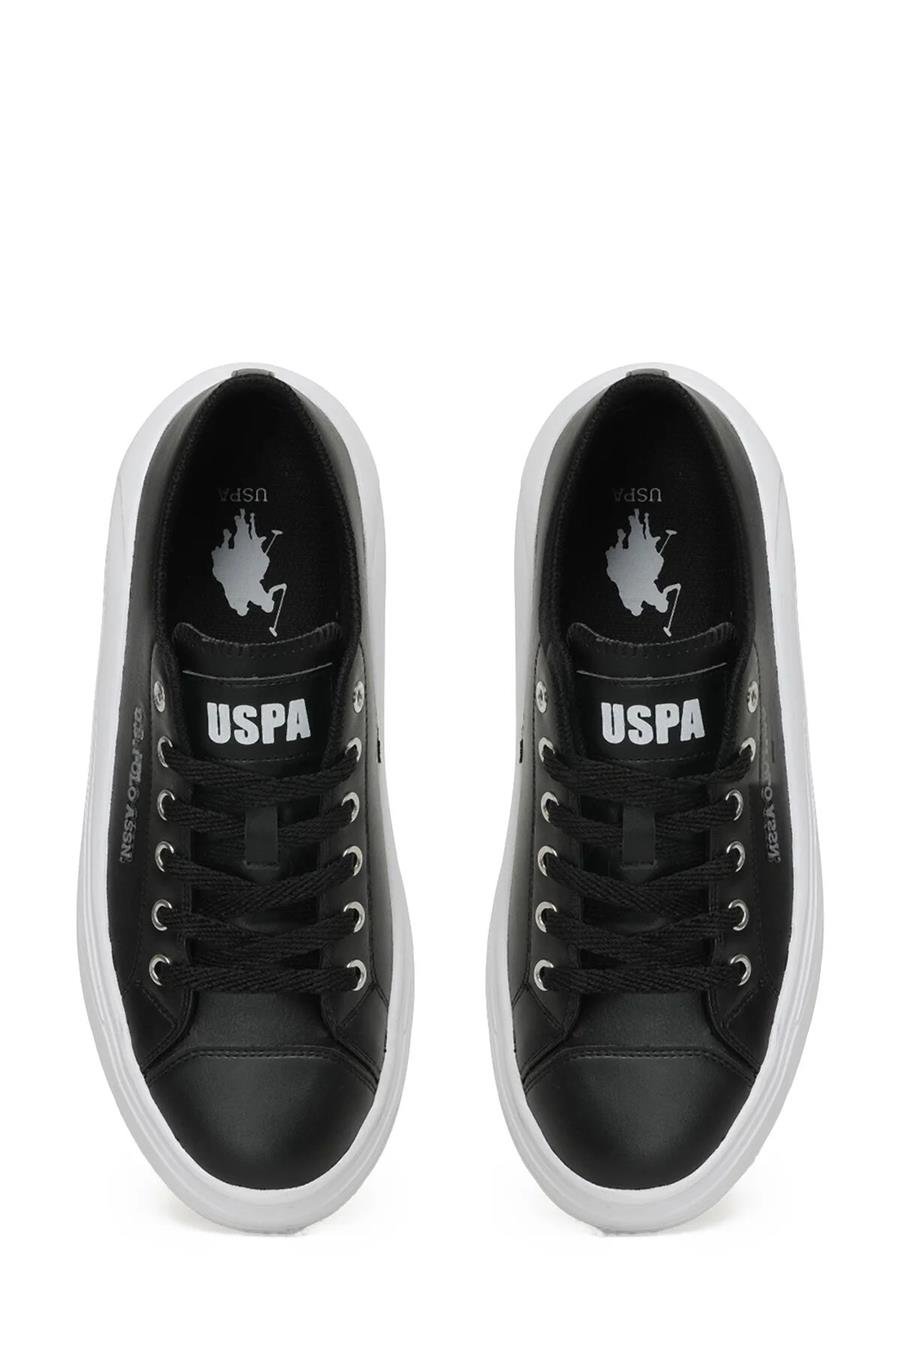 Us Polo Cleme Pu 3Pr Siyah Beyaz Kadın Sneaker Ayakkabı